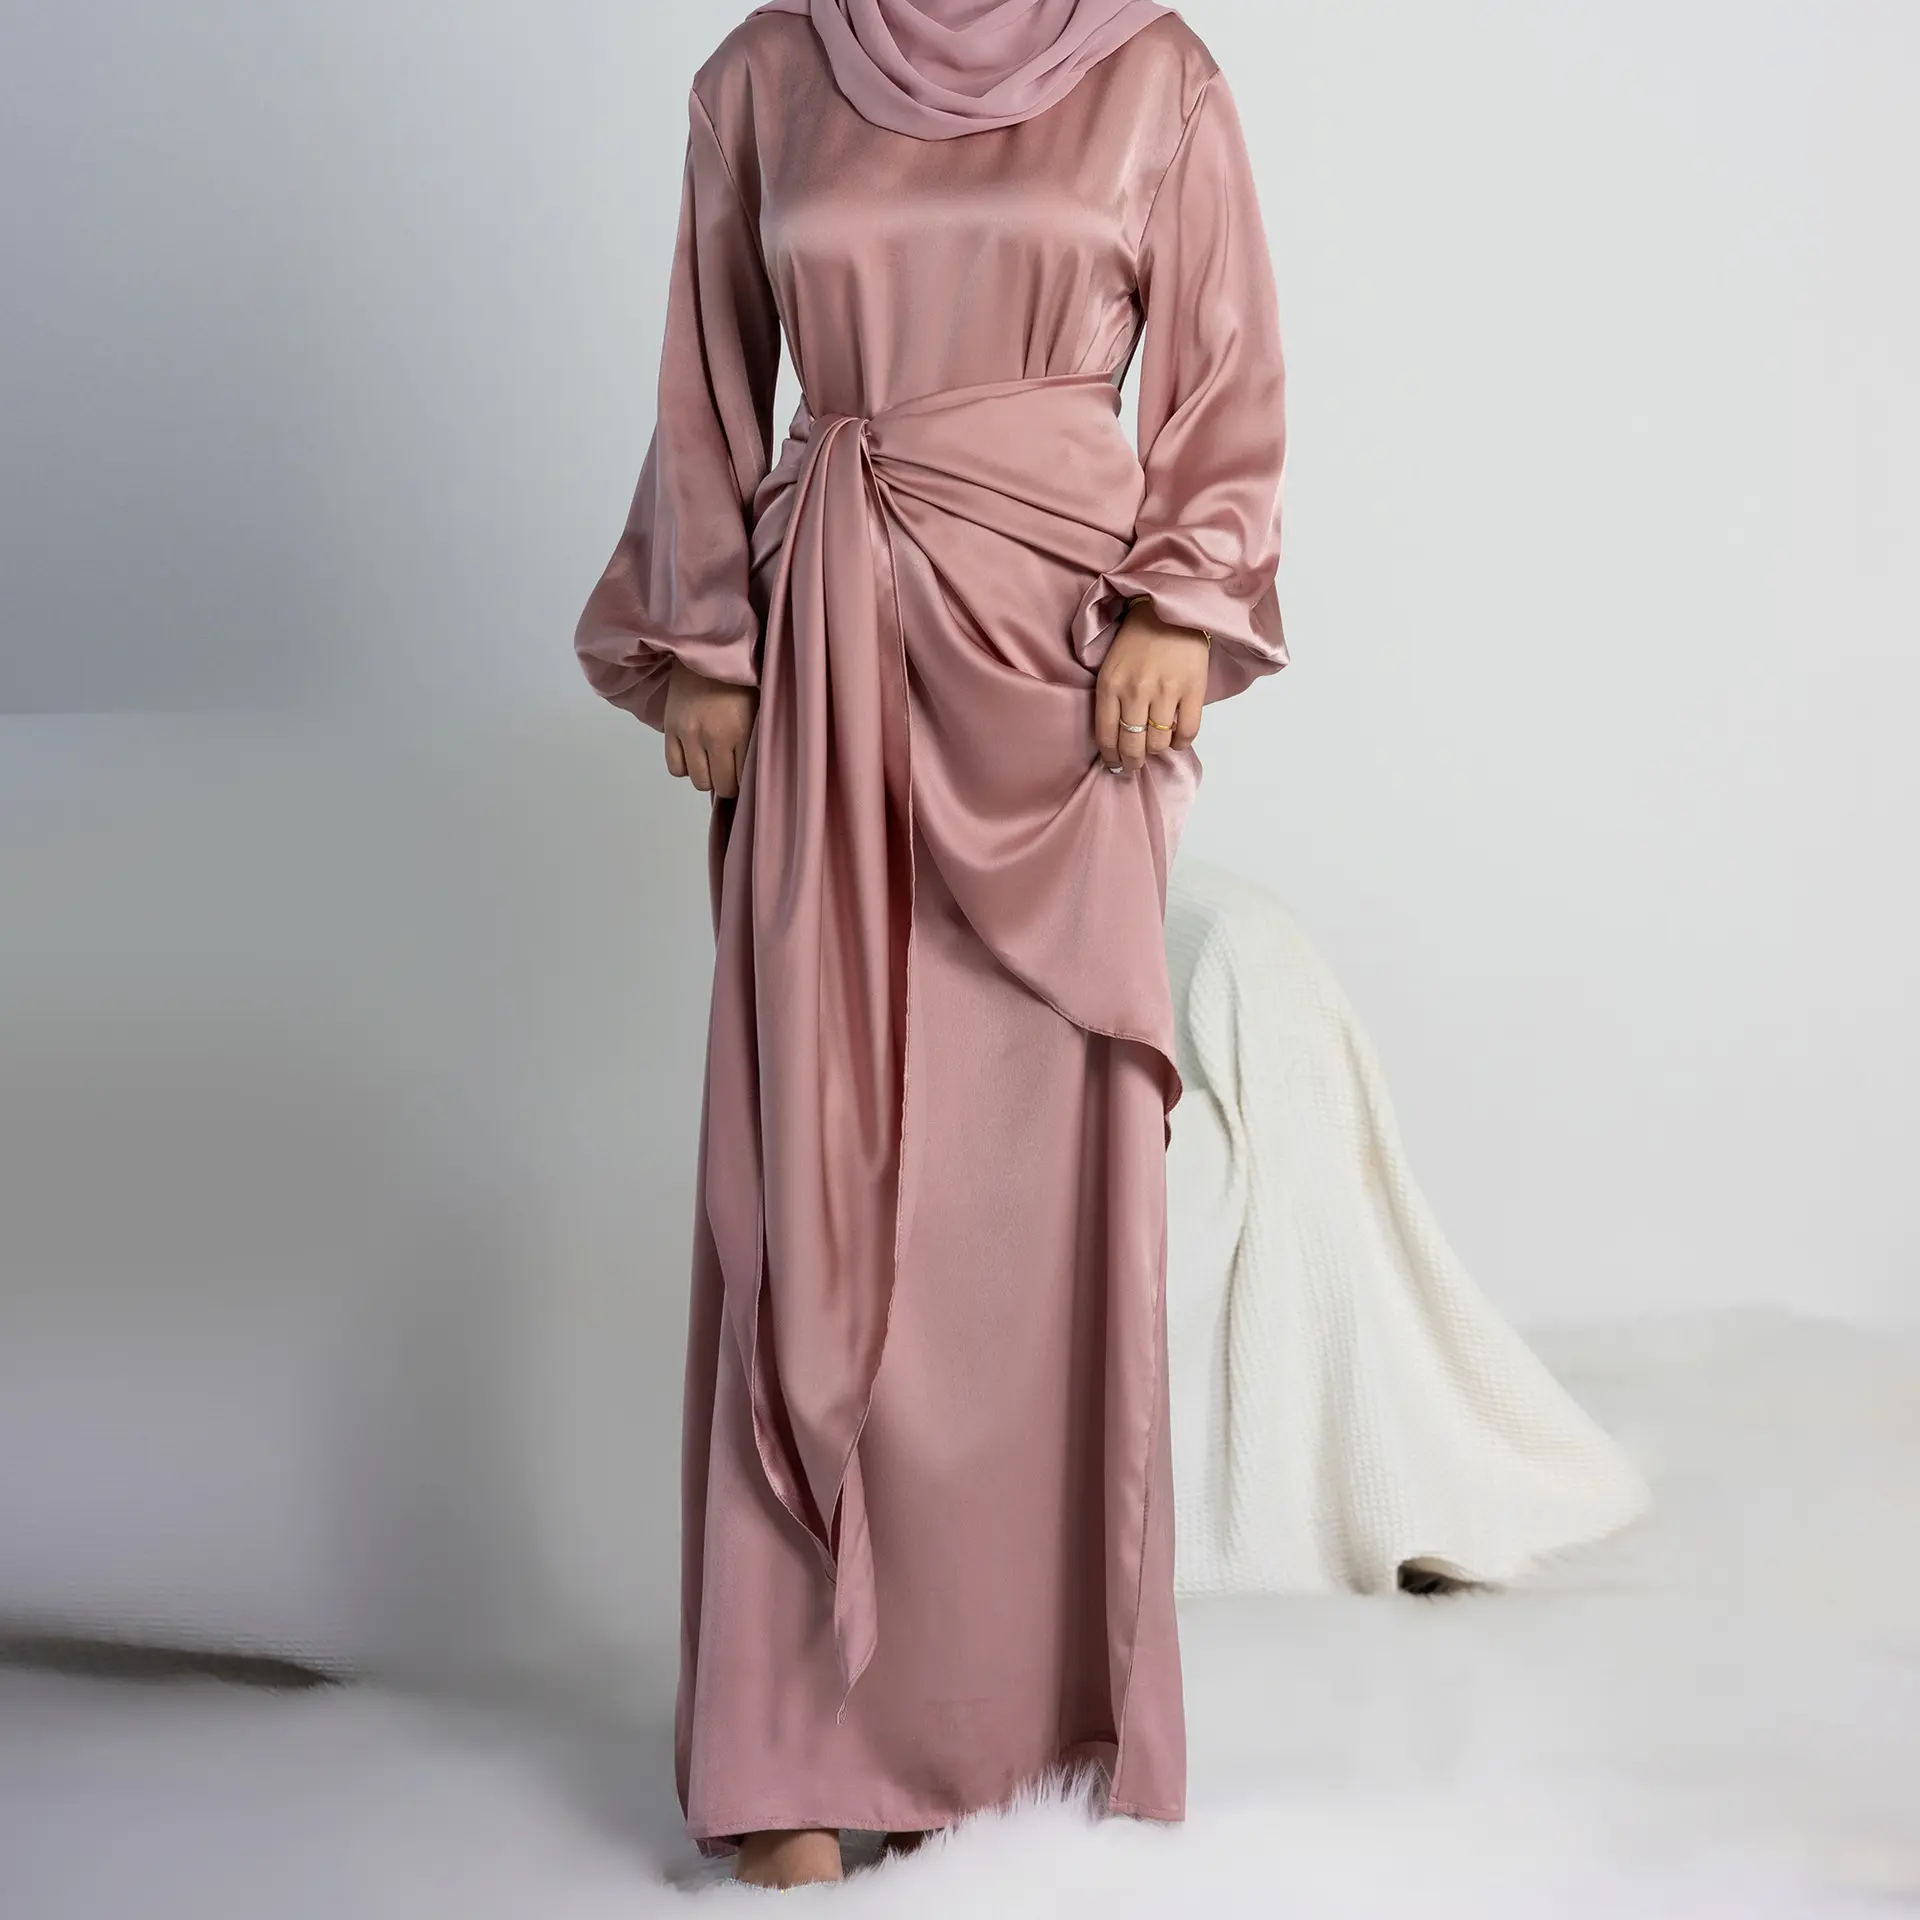 नई ईद इस्लामिक पोशाक साटन 2 पीस मामूली पोशाक मैक्सी अबाया मुस्लिम लड़कियों के लिए सेट अबाया